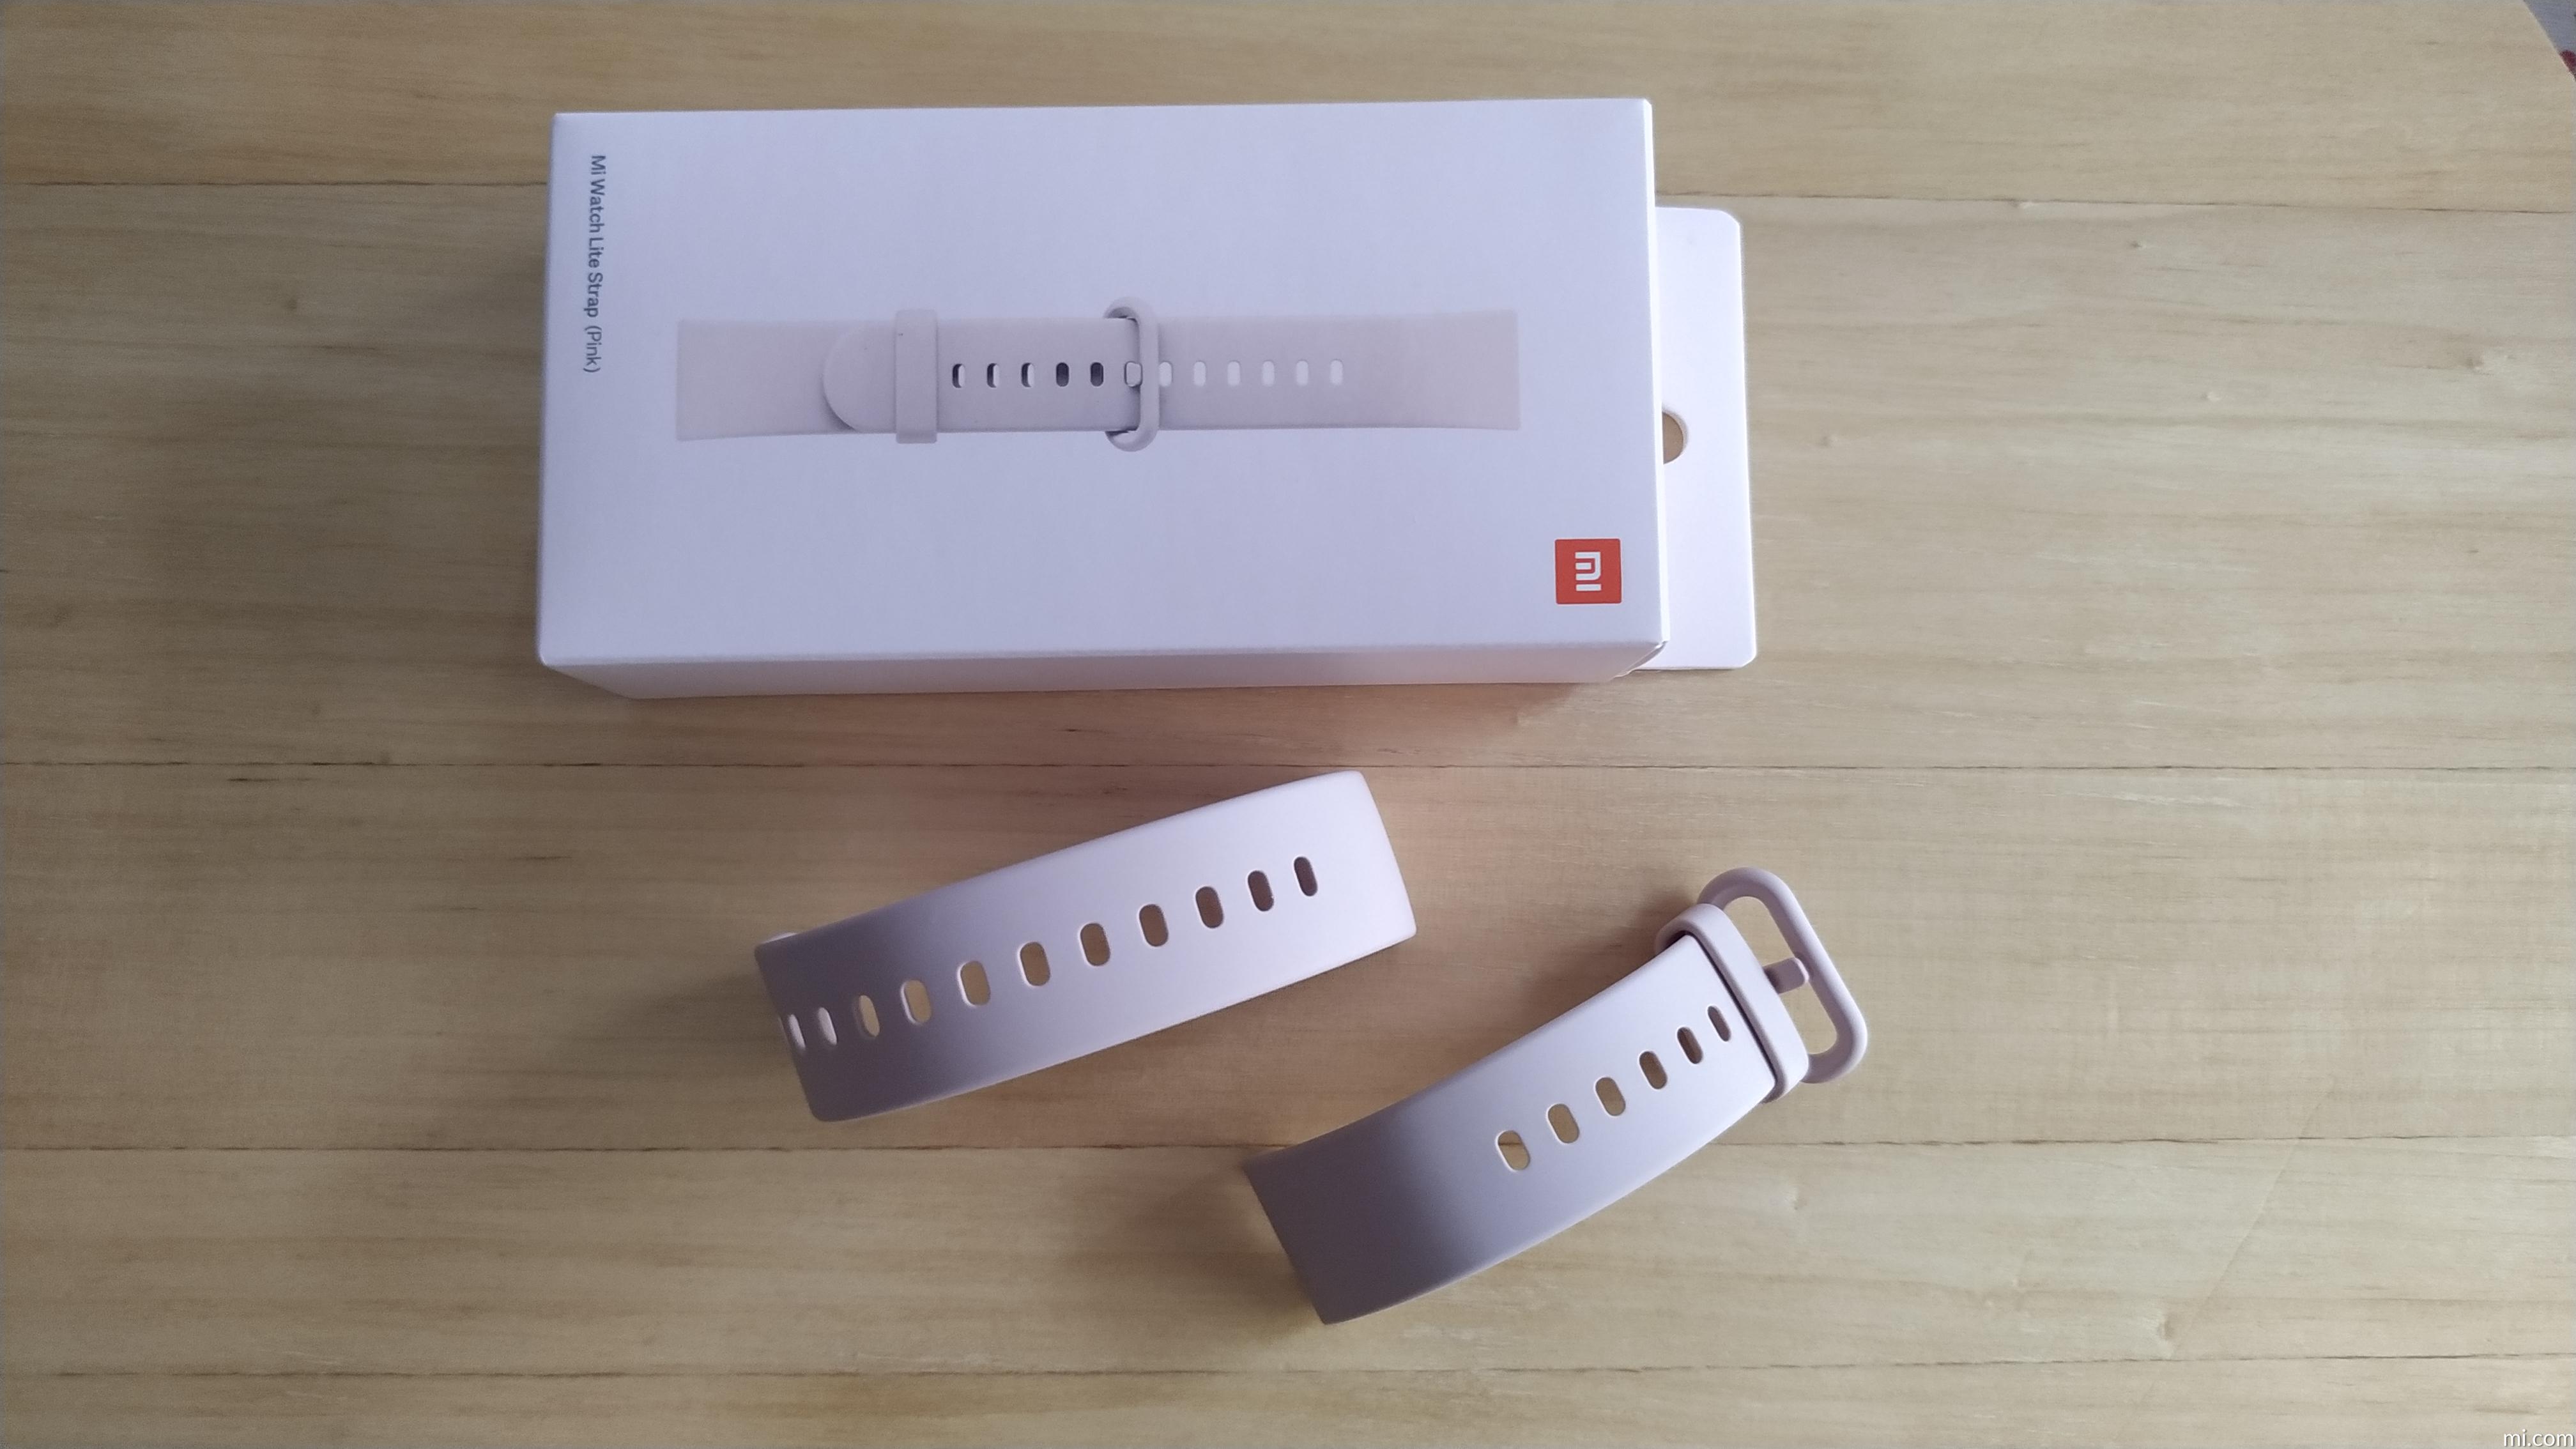 Correa Compatible Con Xiaomi Mi Watch Lite Camuflado Gris - Promart